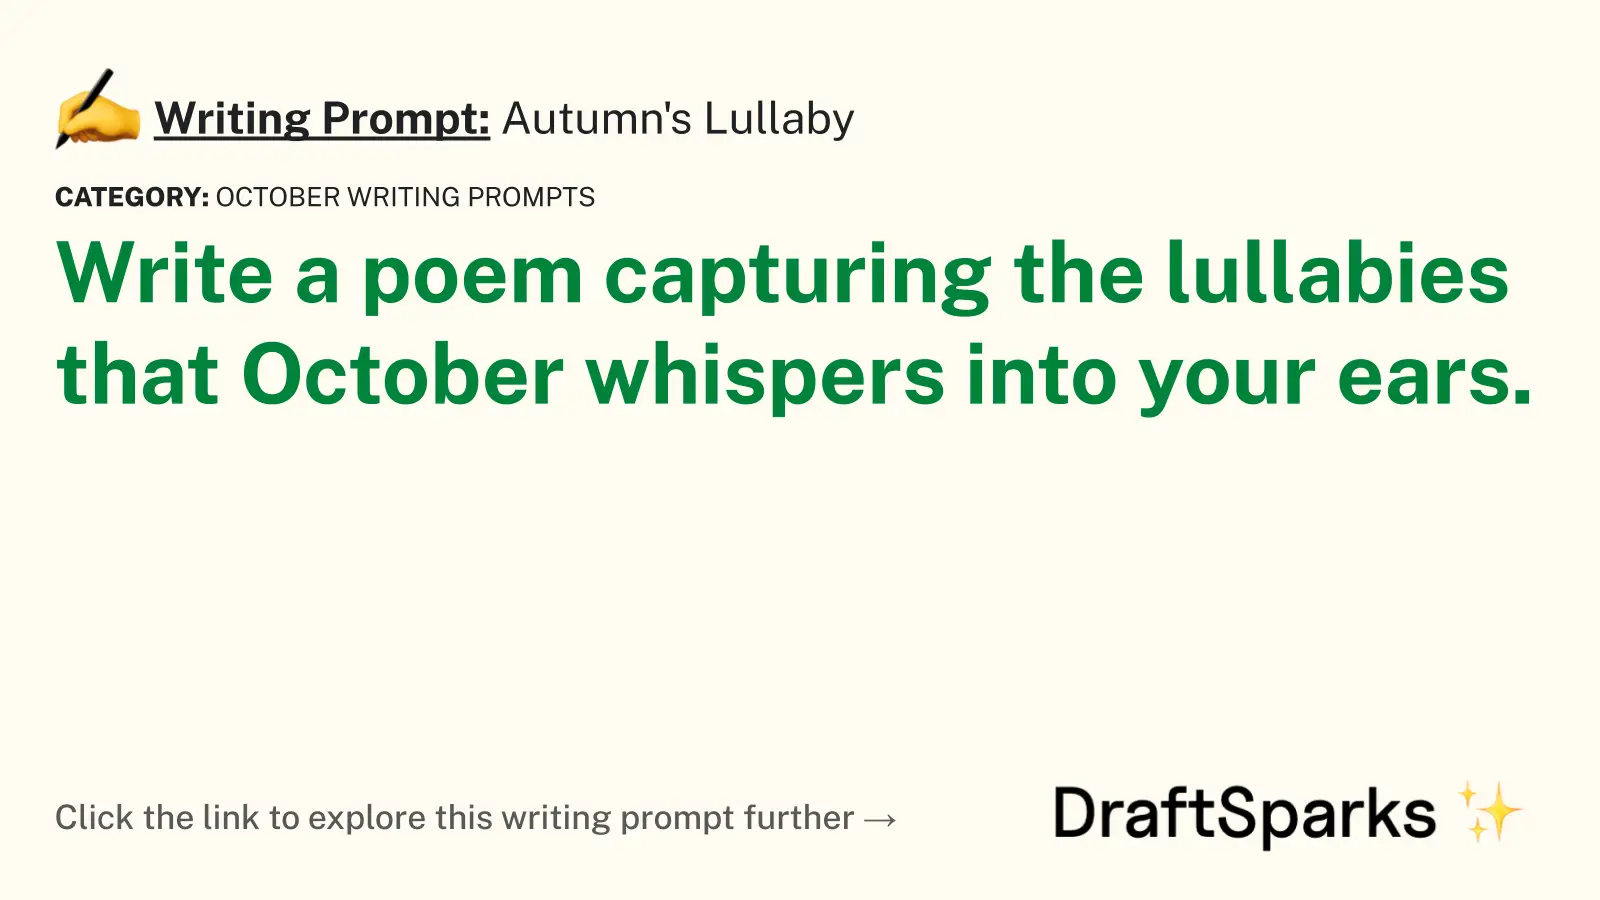 Autumn’s Lullaby